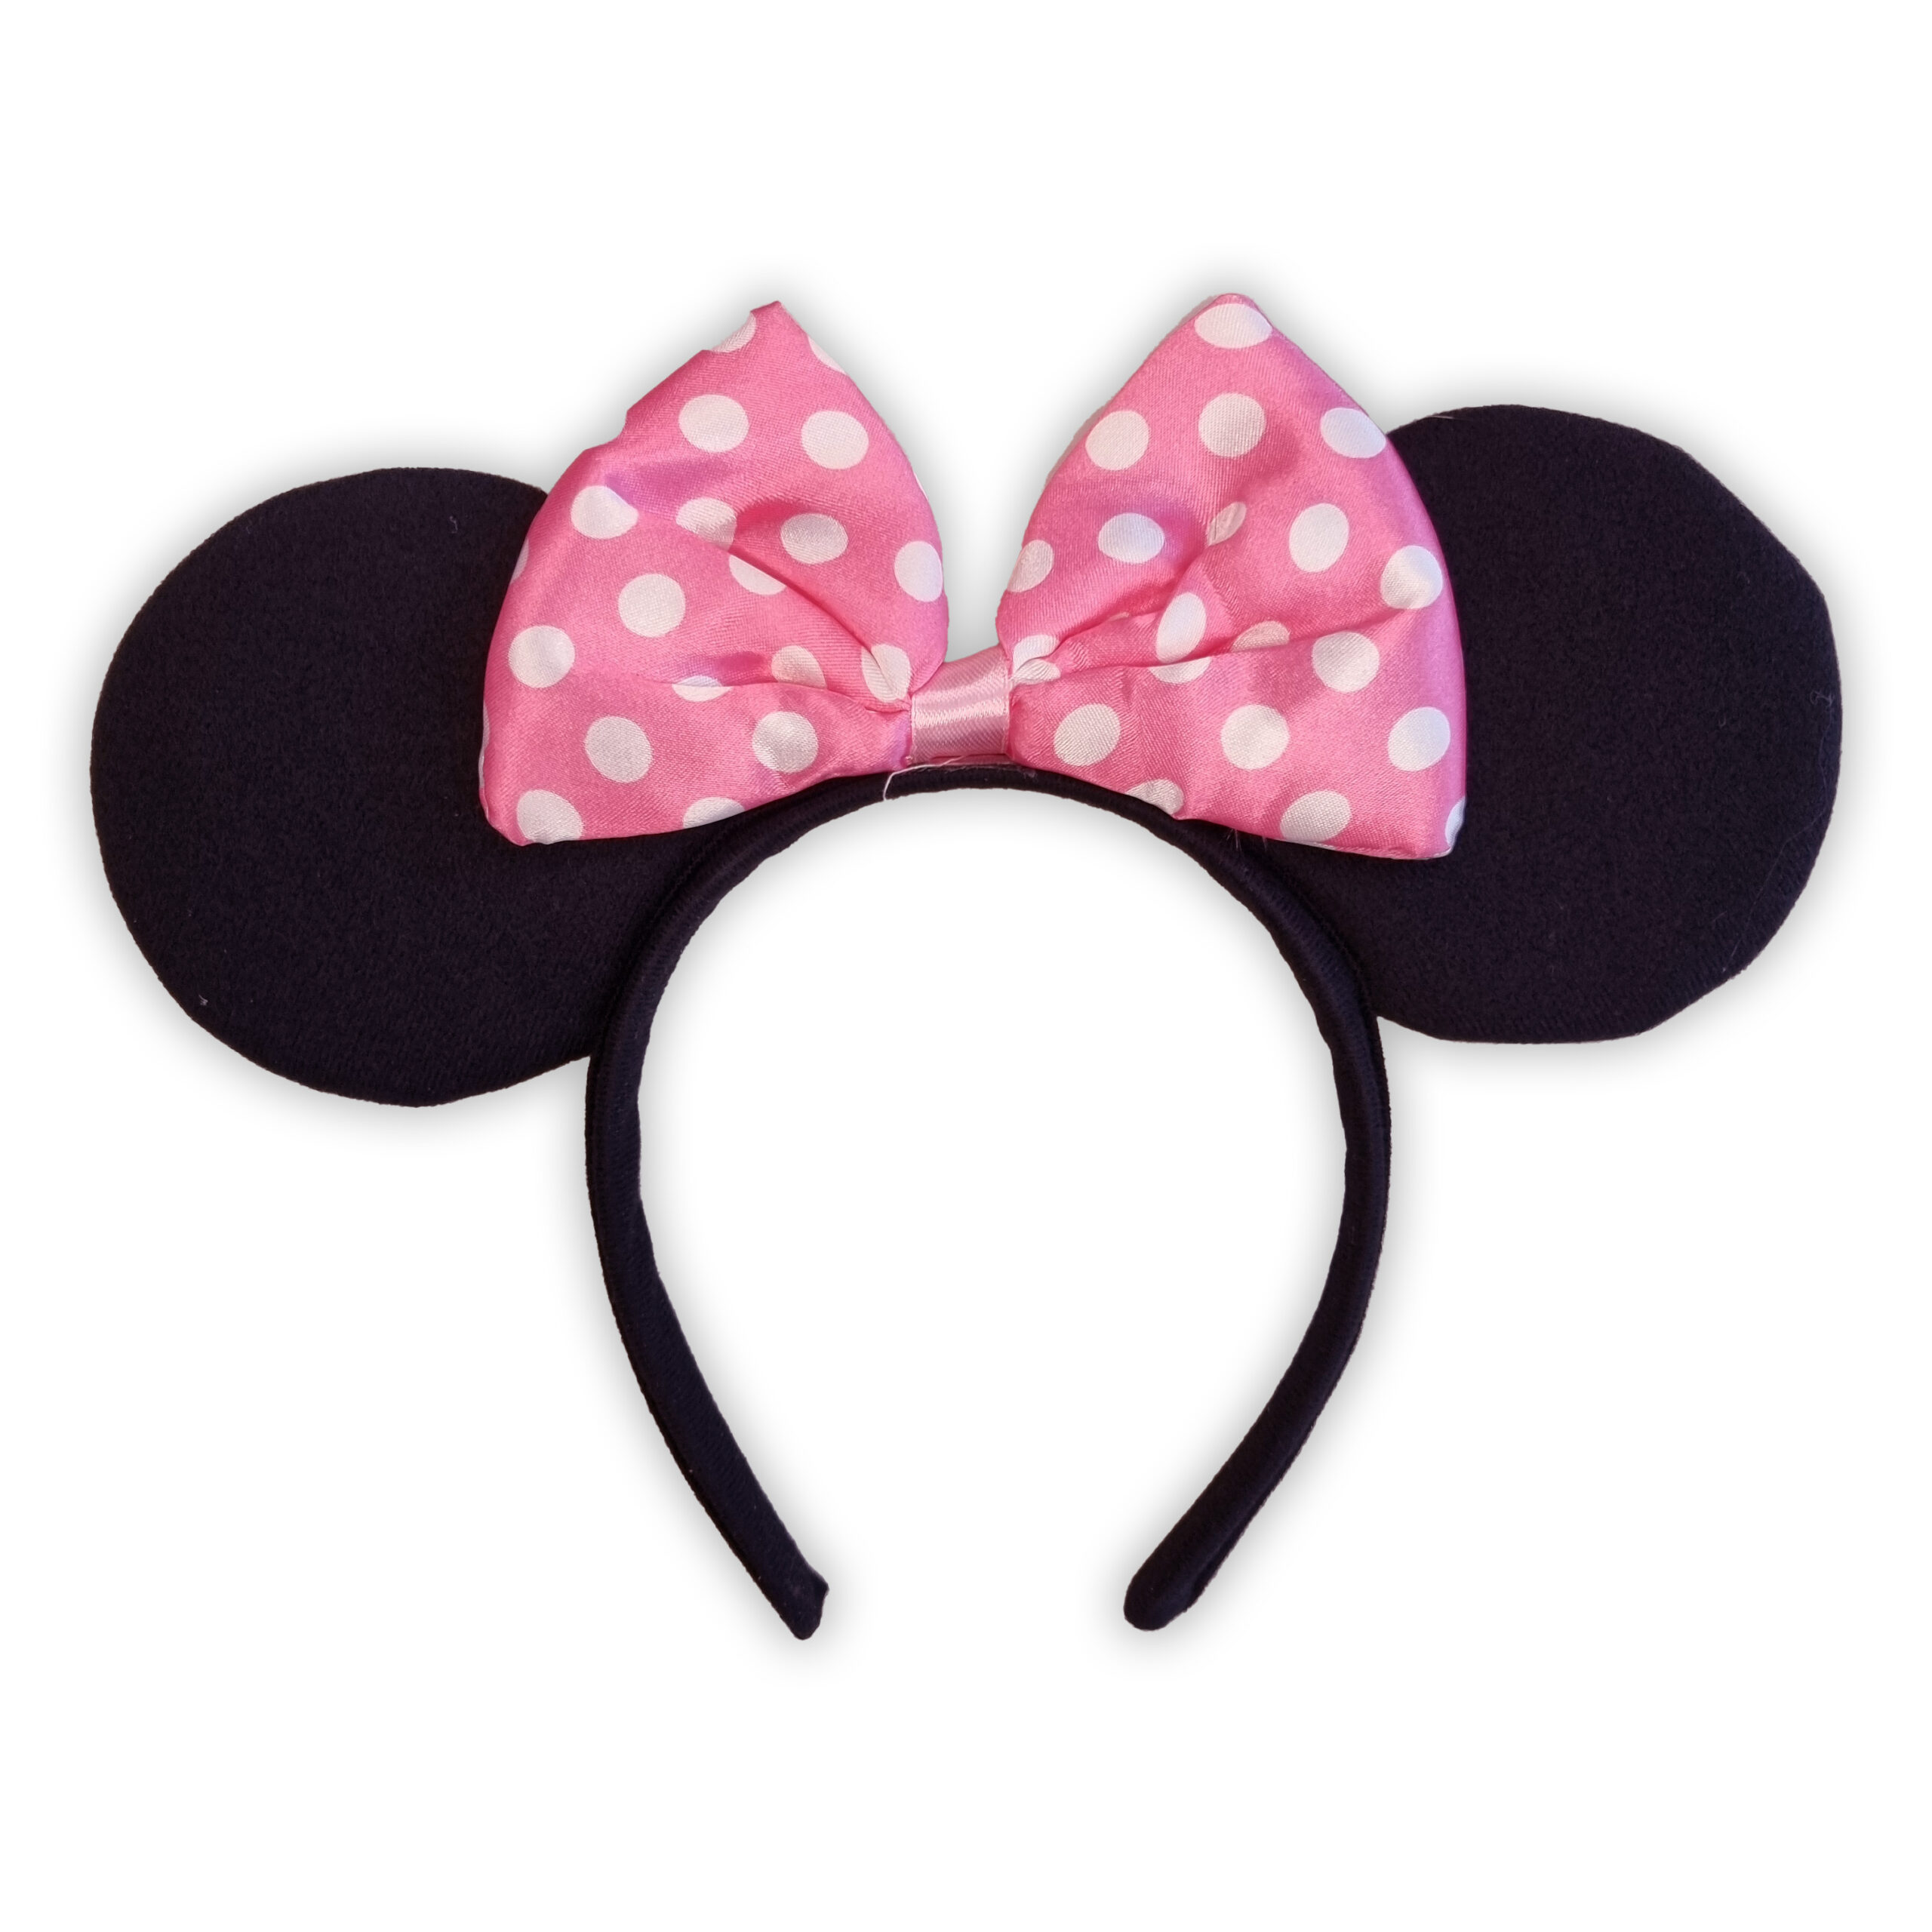 Cerchietto con orecchie Minnie Disney per bambina - Disney